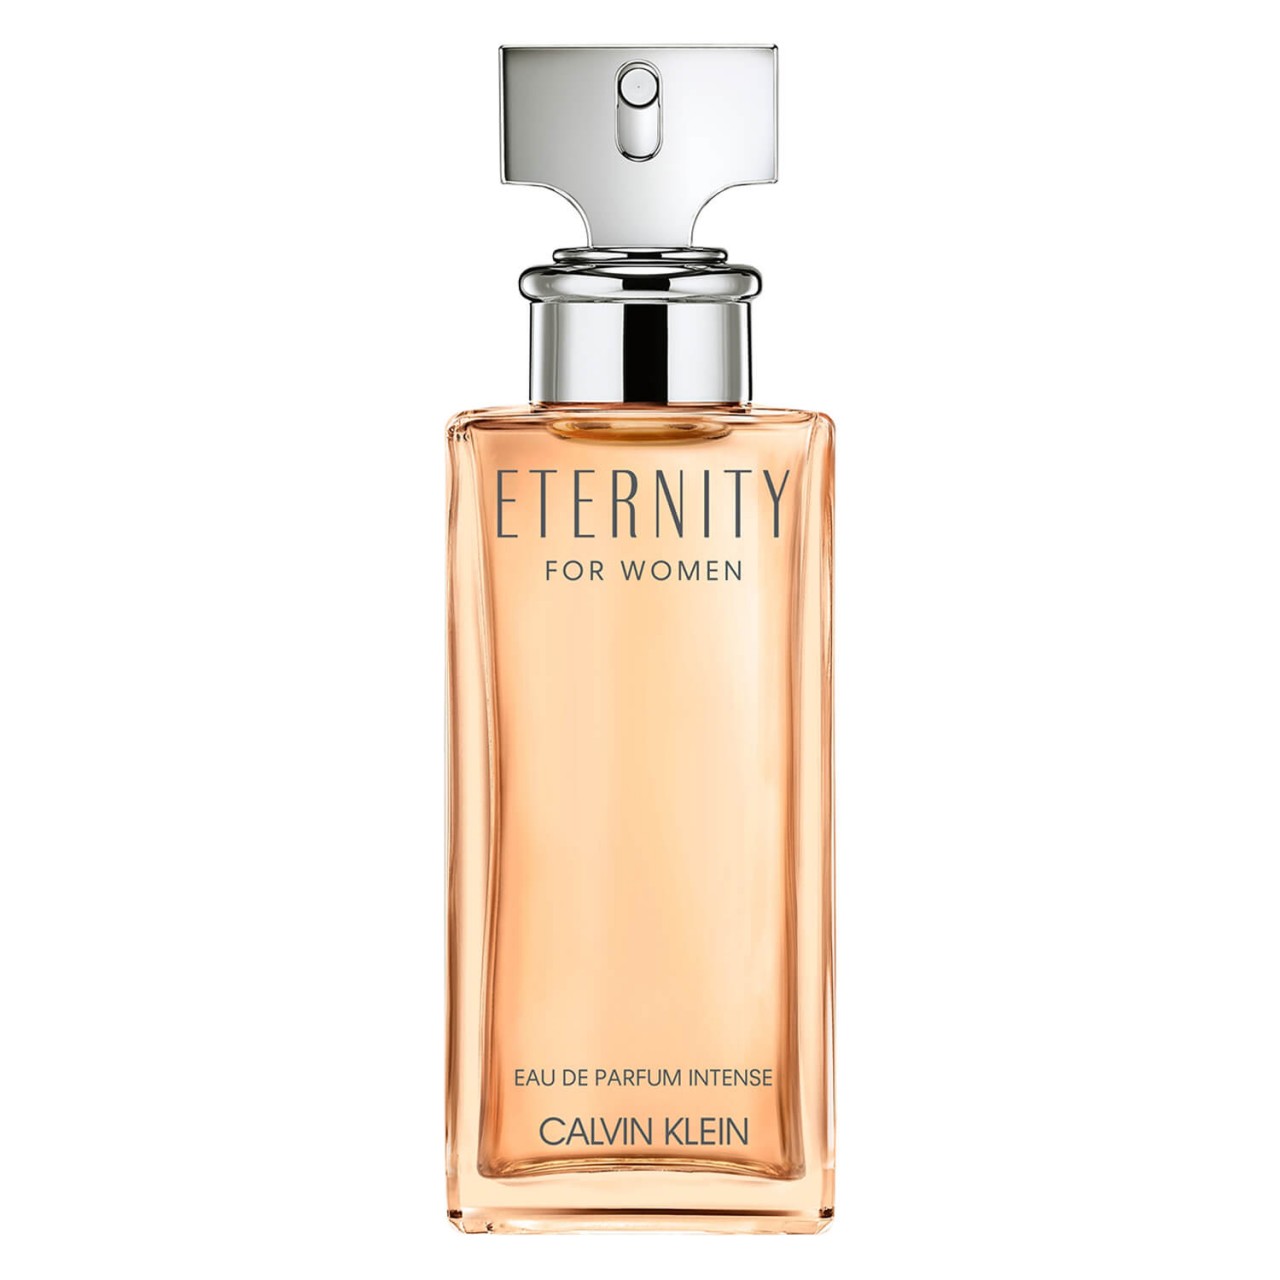 Eternity - Eau de Parfum Intense von Calvin Klein